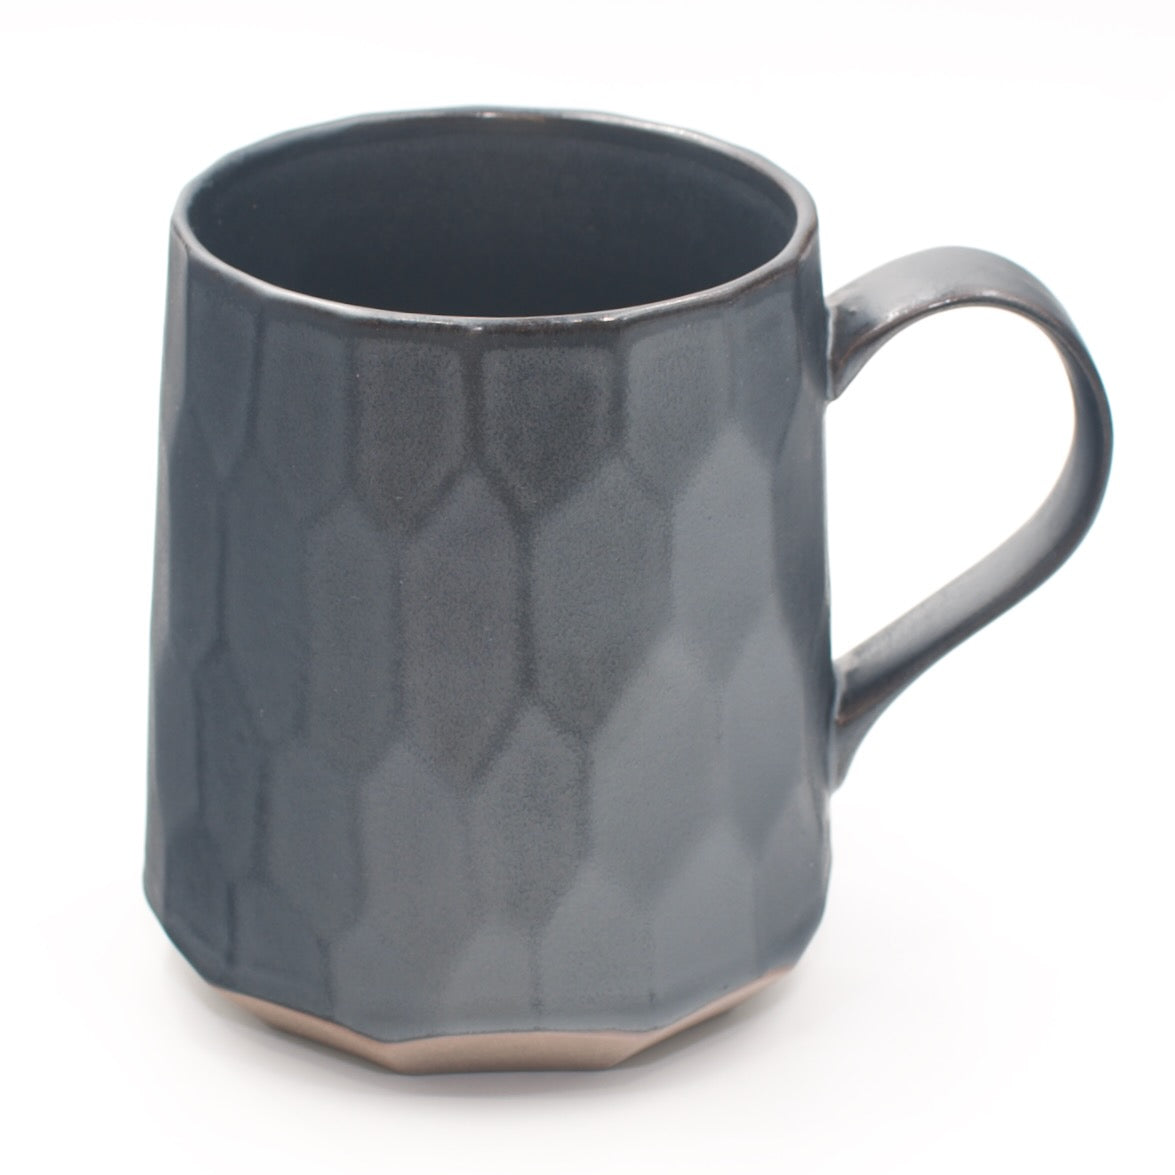 Patterned Tea Mug with Infuser - 0